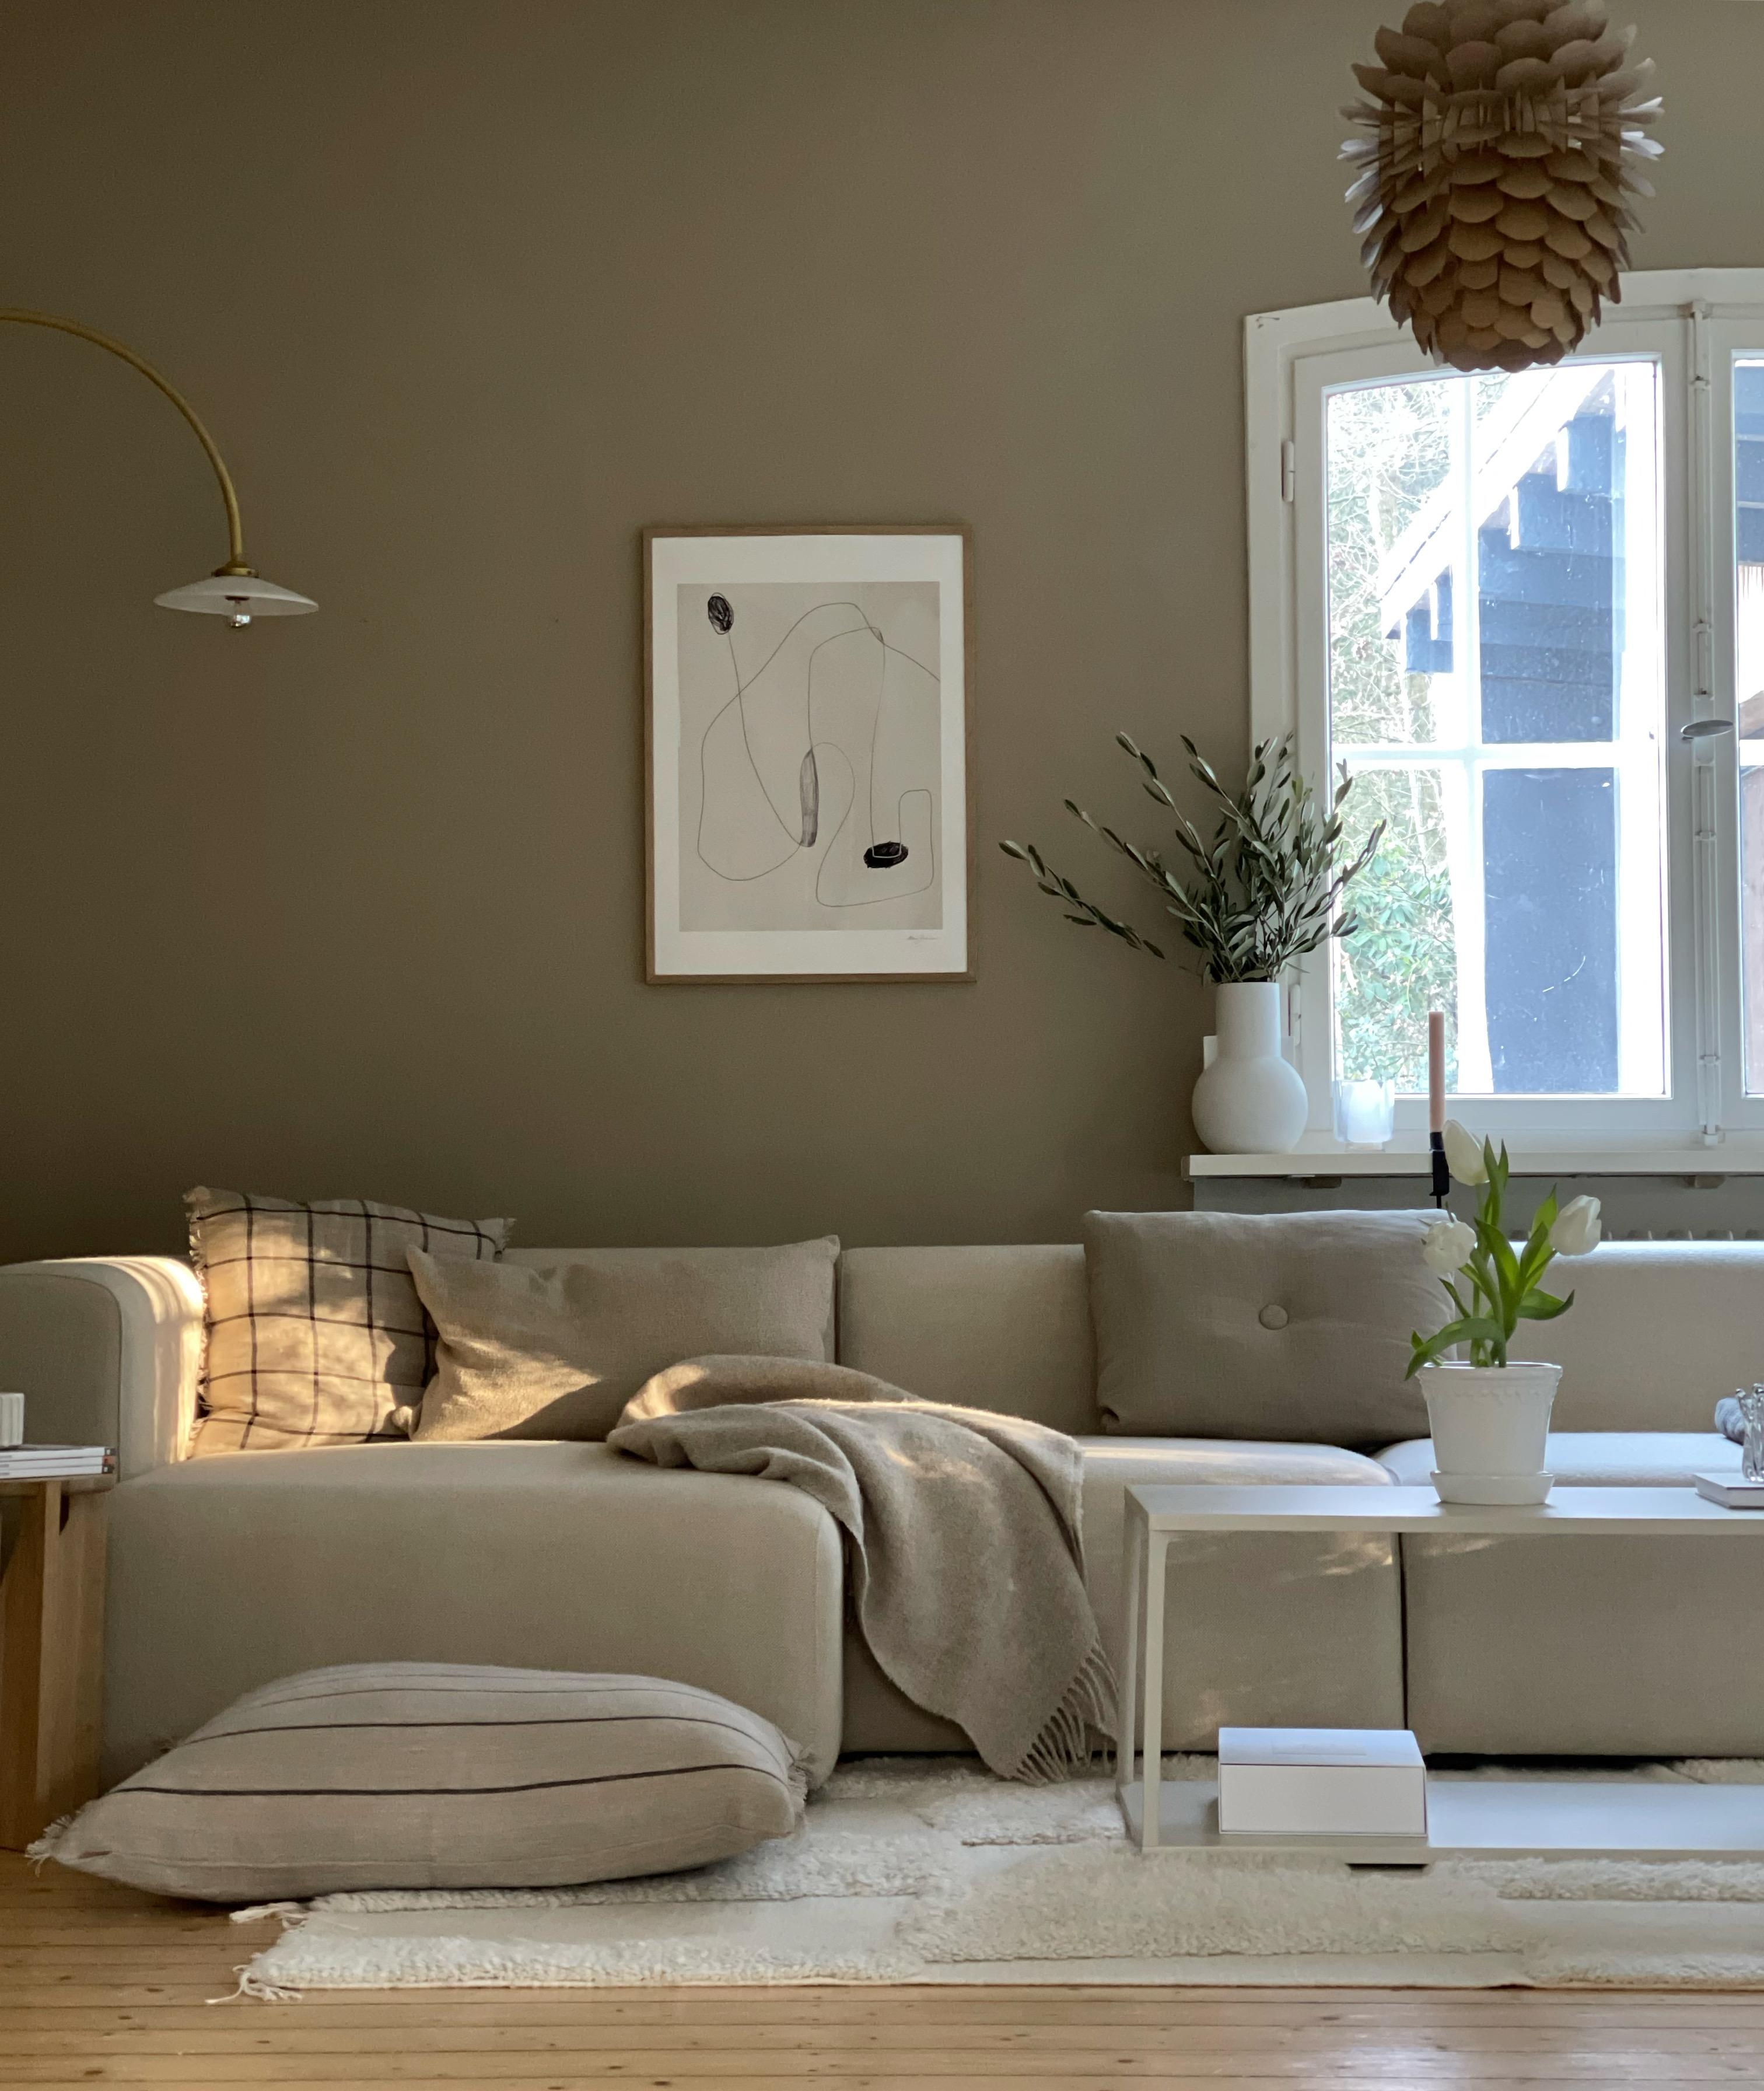 Der perfekte Ort, um in der neuen Couch zu blättern 🤎☕️. 
#couchmoment #wohnzimmer #couch #livingroom